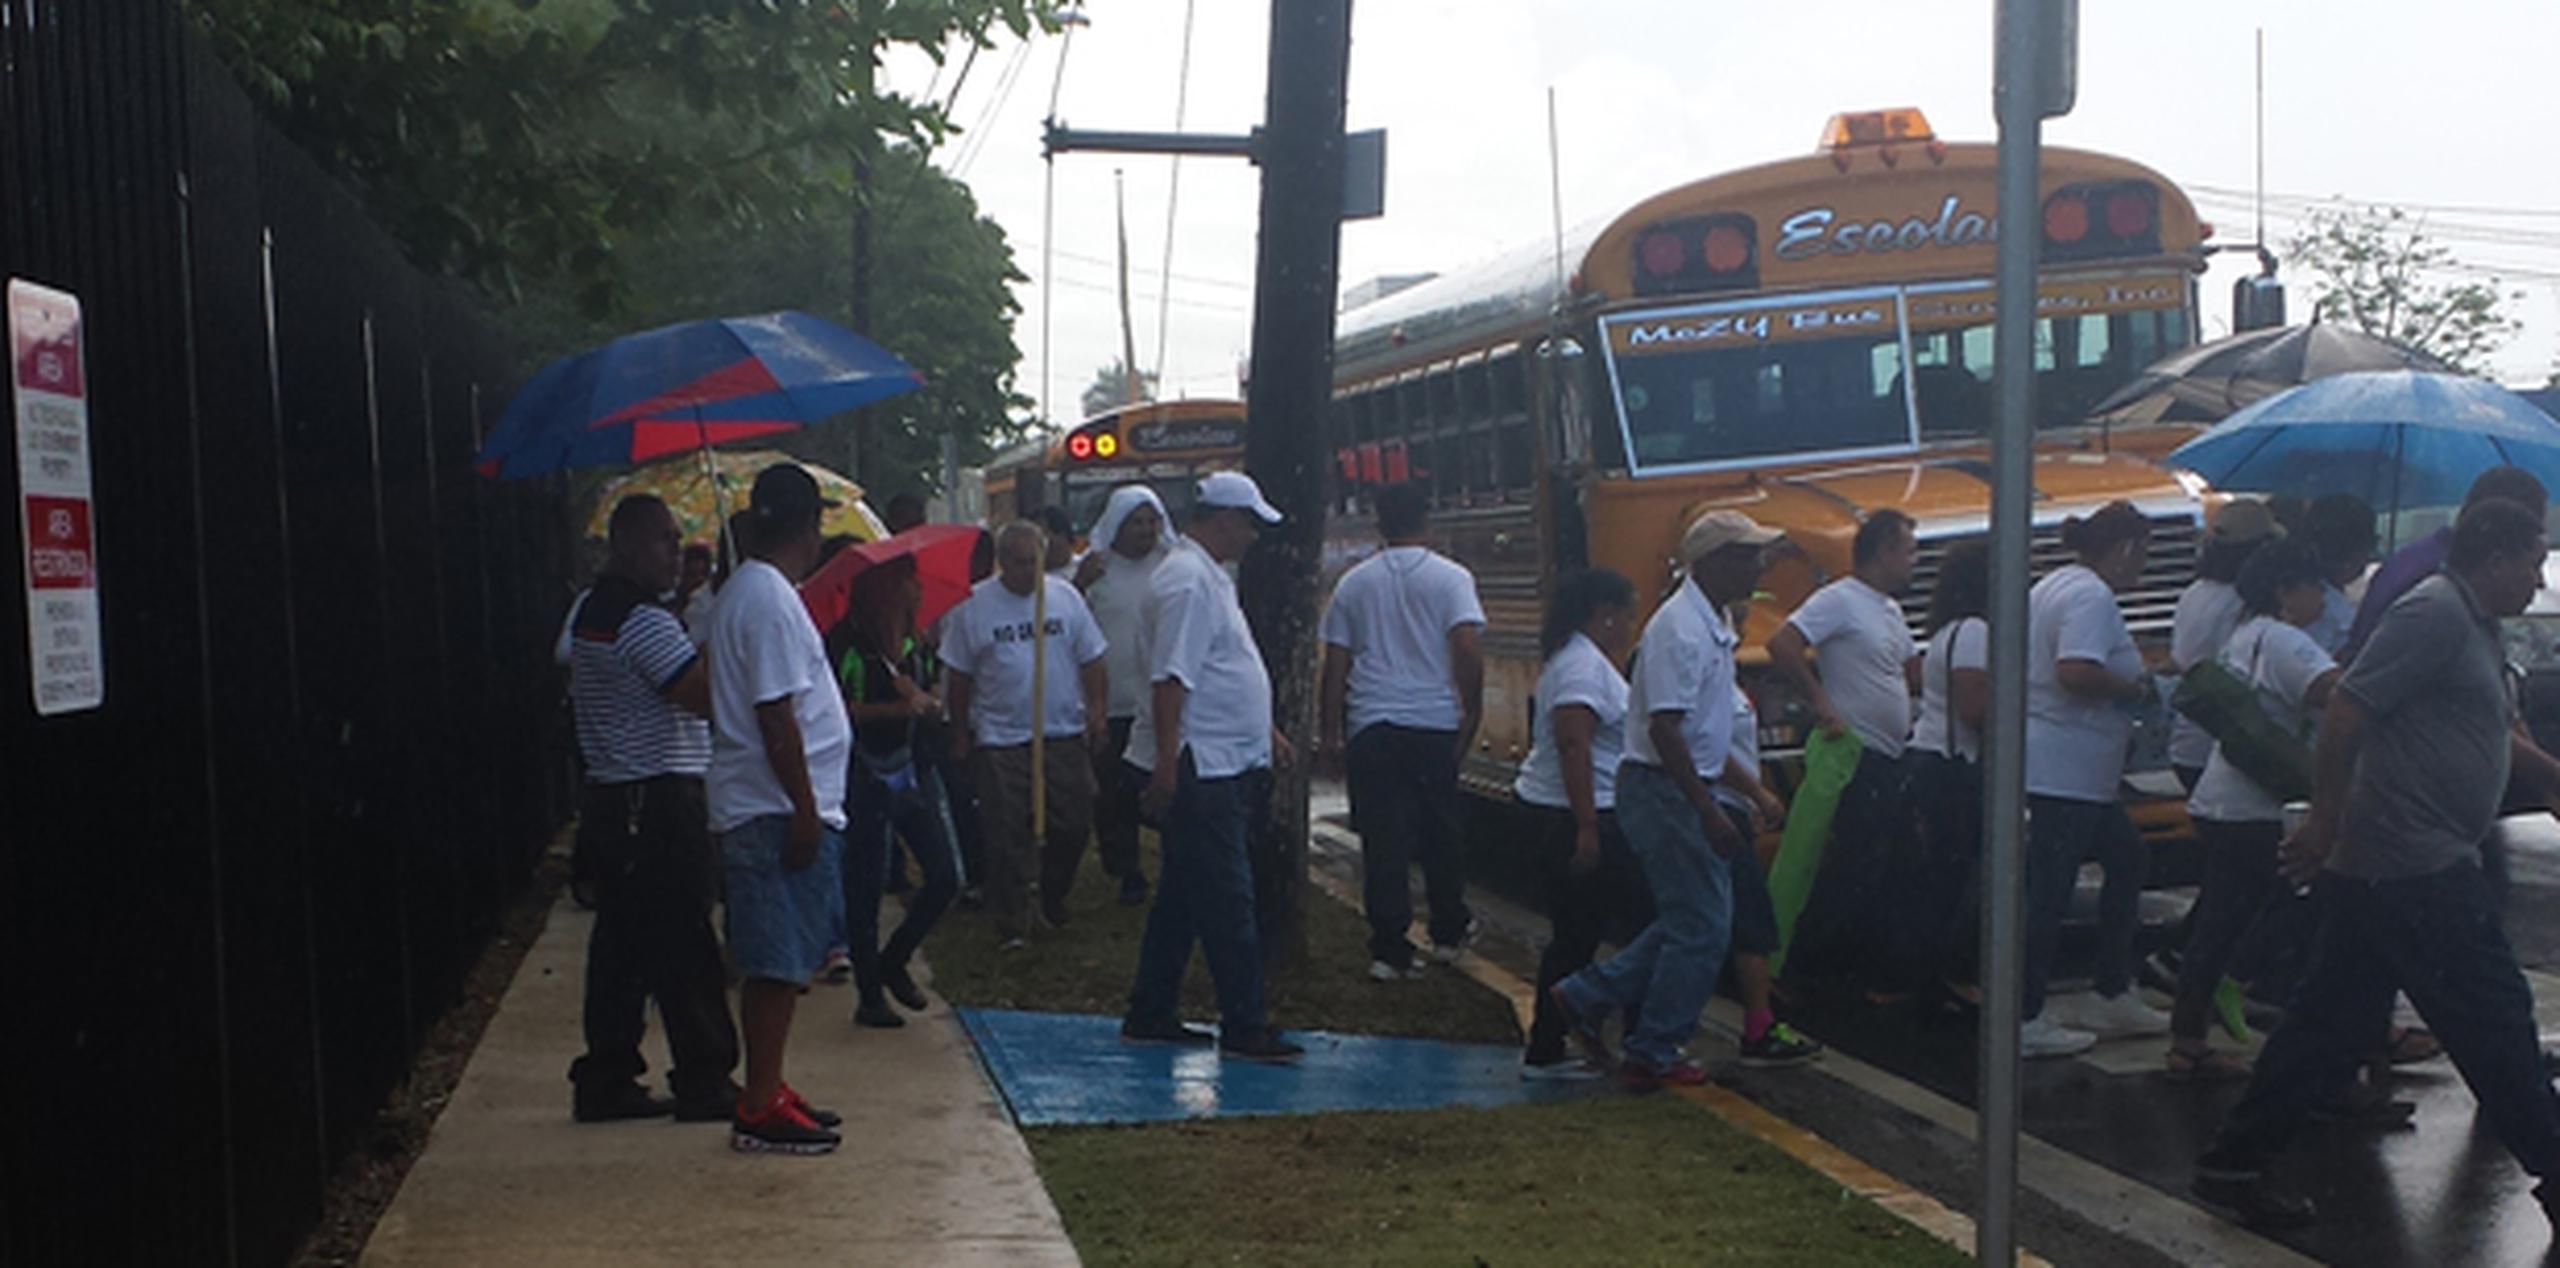 Los manifestantes llegaron en dos autobuses escolares acompañados por un tercer vehículo con equipo de sonido que reproducía música sacra. (nydia.bauza@gfrmedia.com)